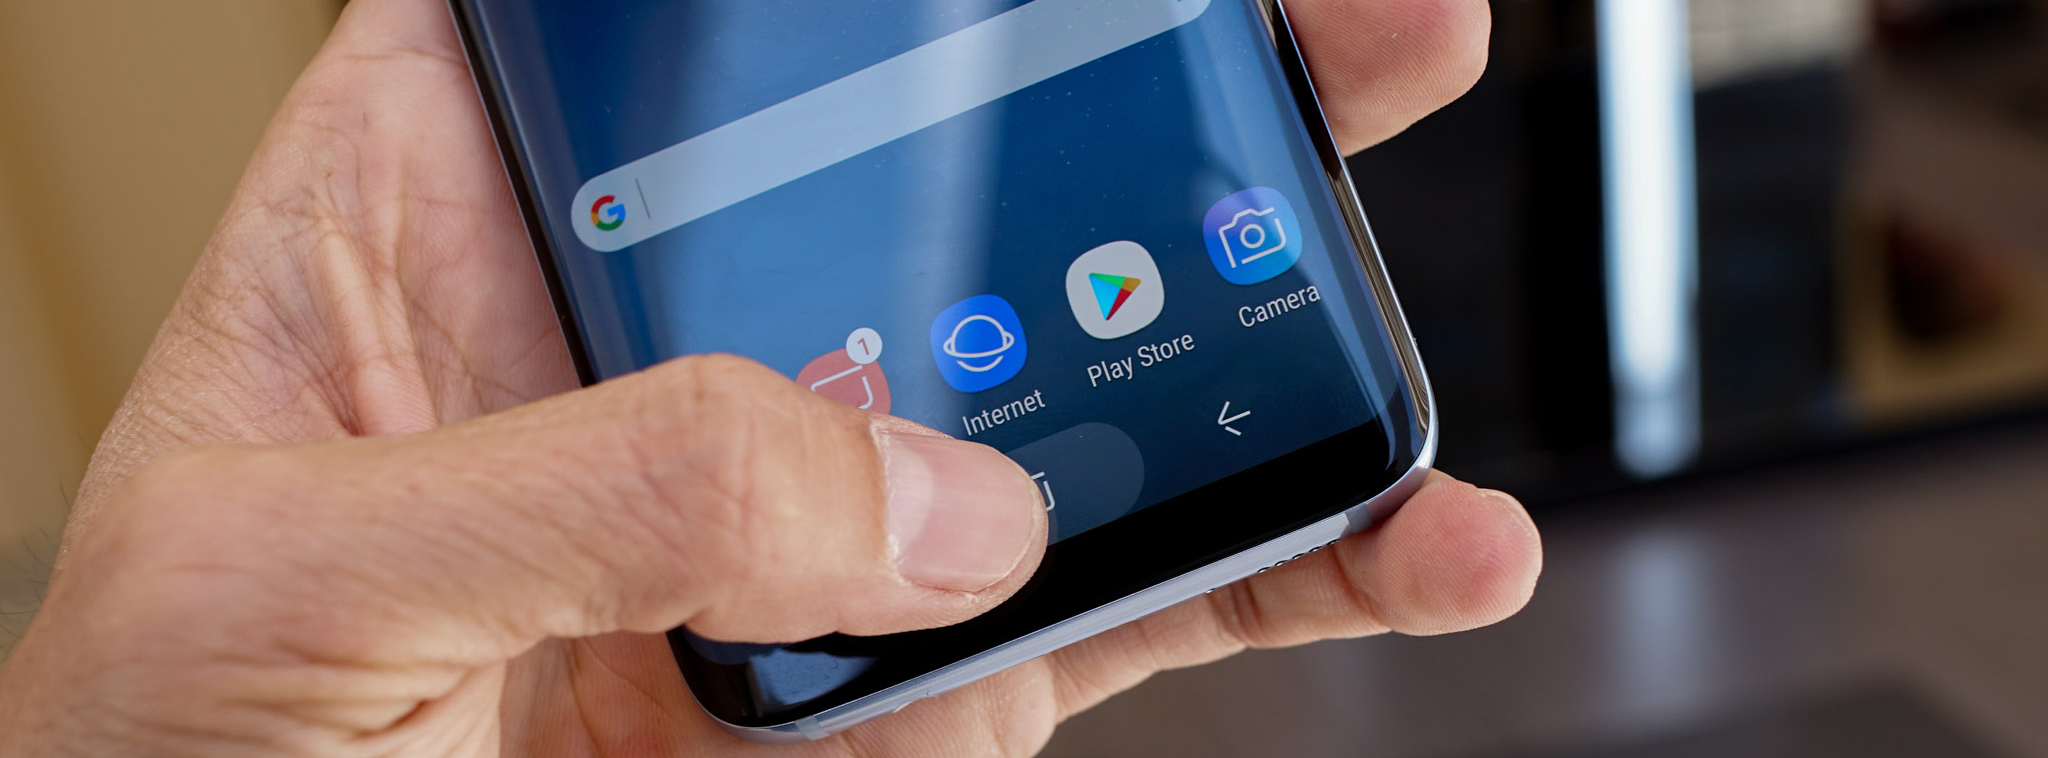 Lộ trình cập nhật Android 7.0 Nougat của các máy Samsung